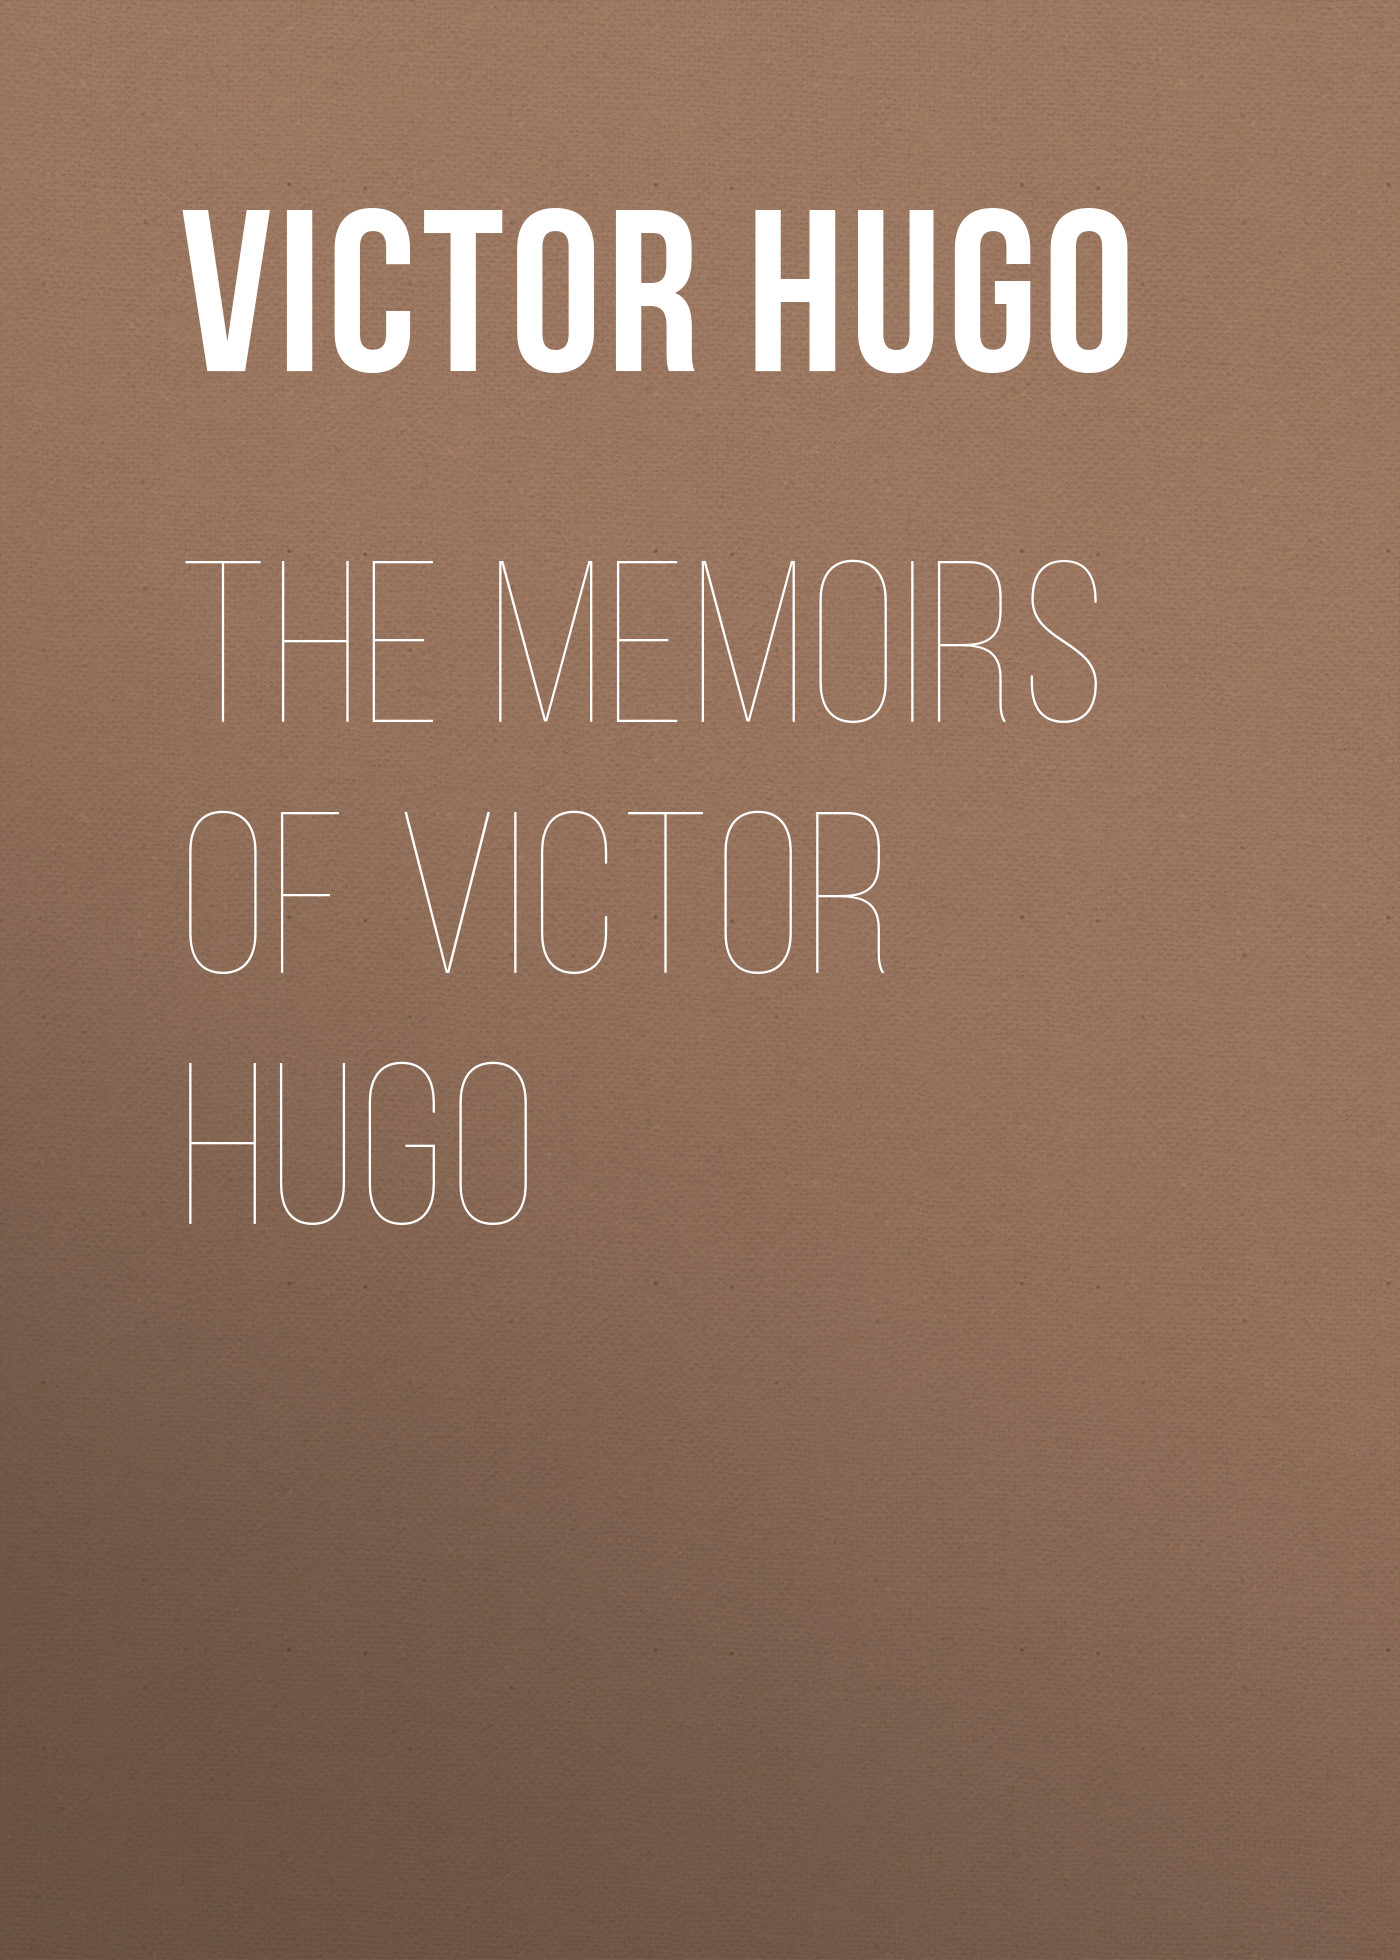 Книга The Memoirs of Victor Hugo из серии , созданная Victor Hugo, может относится к жанру Литература 19 века, Зарубежная старинная литература, Зарубежная классика. Стоимость электронной книги The Memoirs of Victor Hugo с идентификатором 25228860 составляет 0 руб.